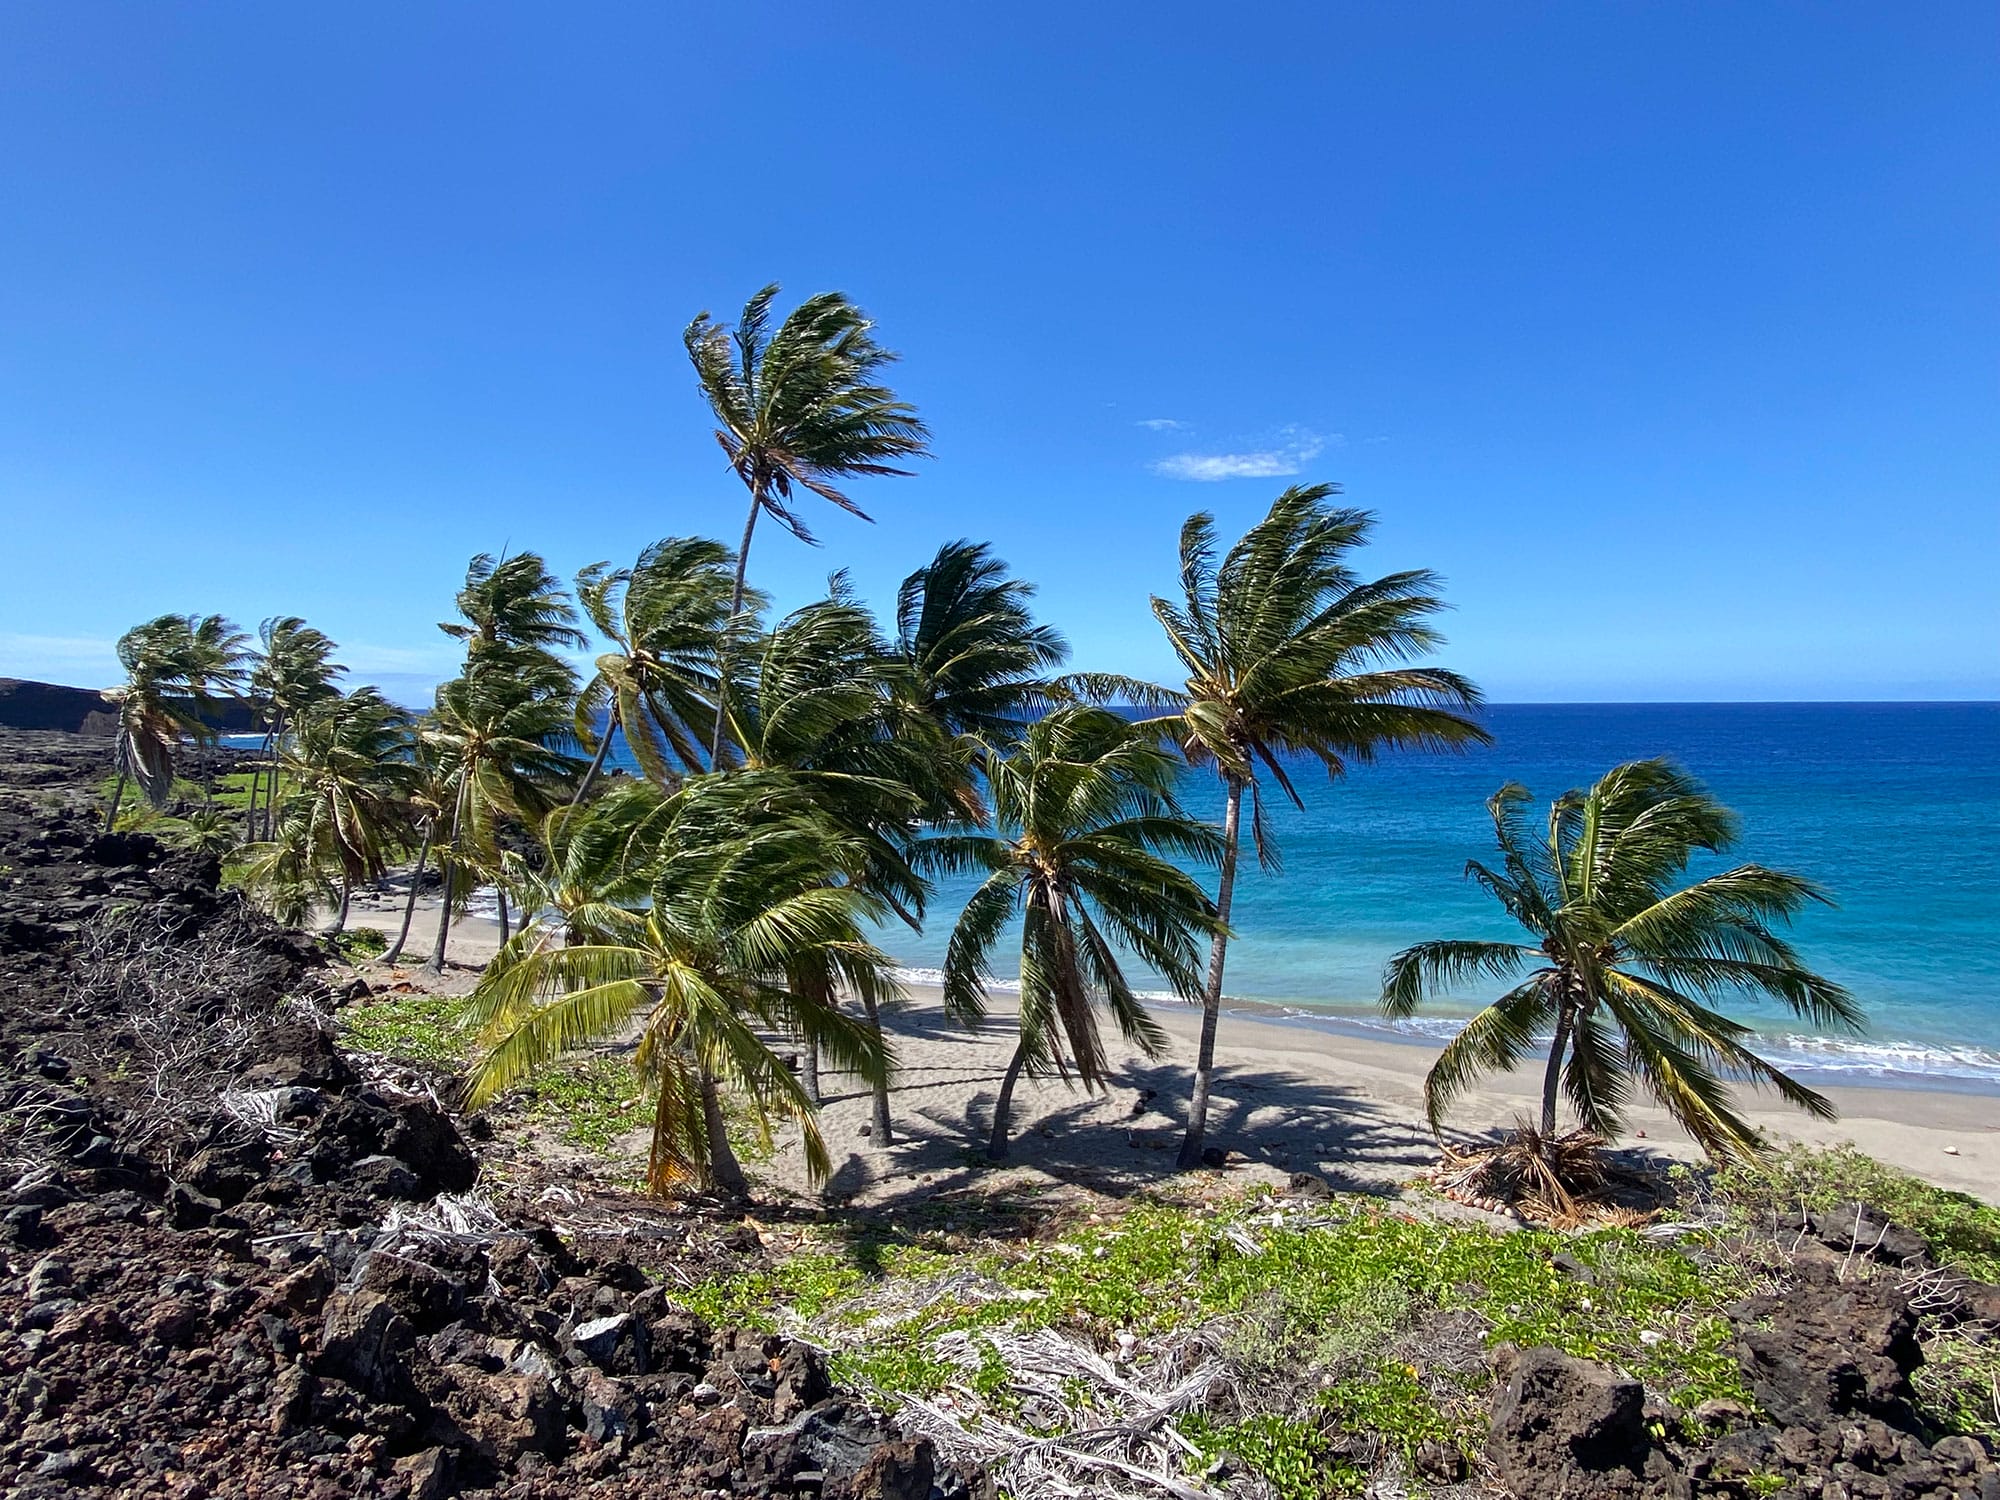 Palm trees on a rocky beach near the ocean.